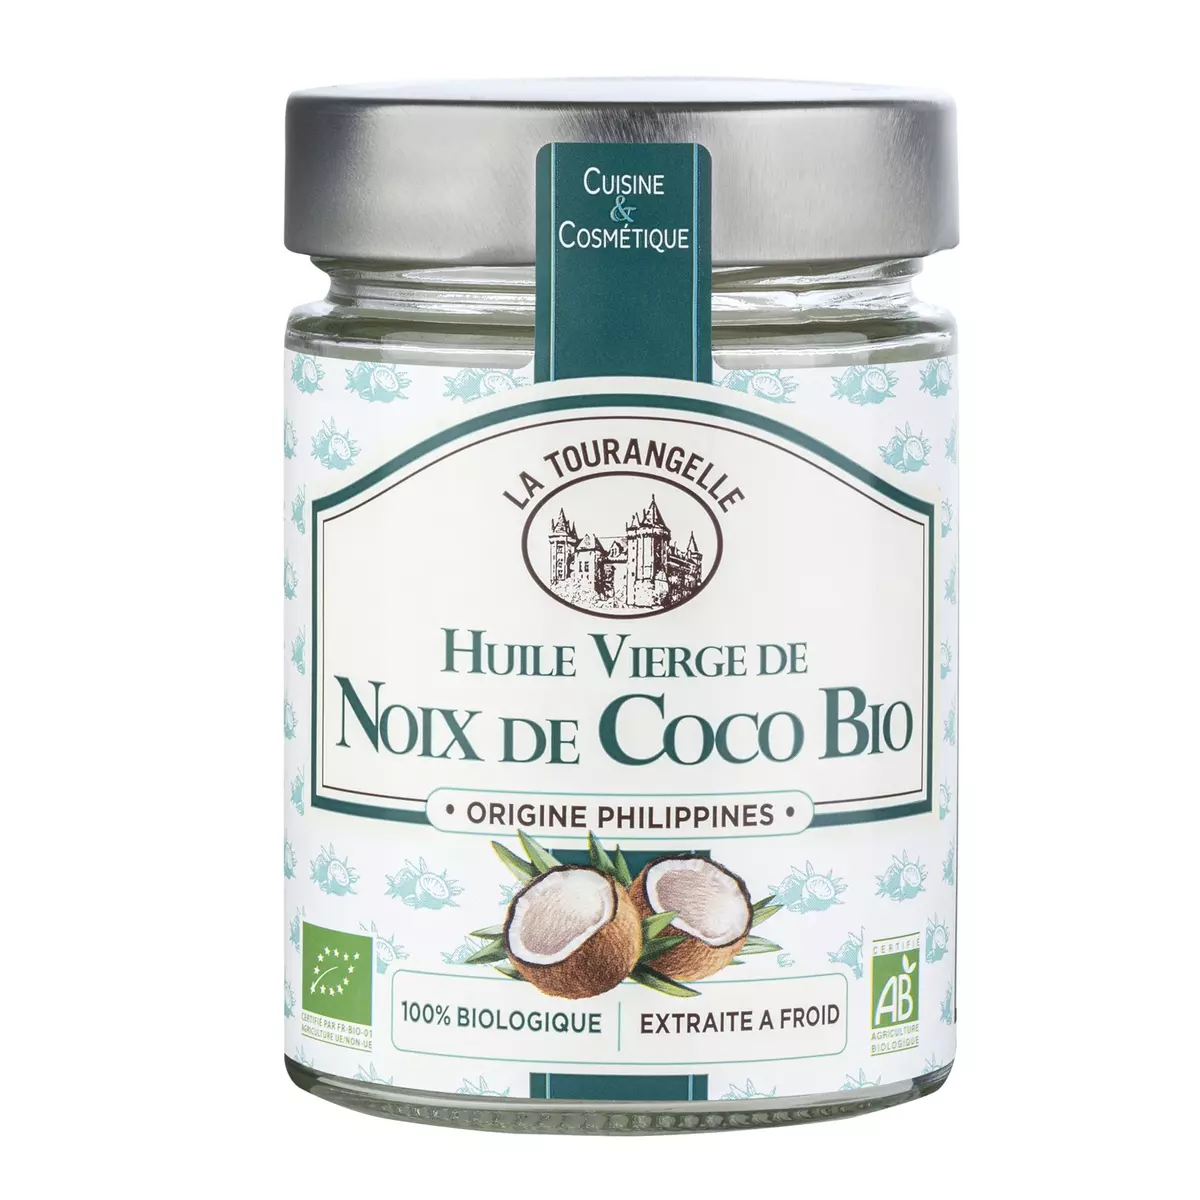 LA TOURANGELLE Huile vierge de noix de coco bio cuisine et cosmétique 31,4cl